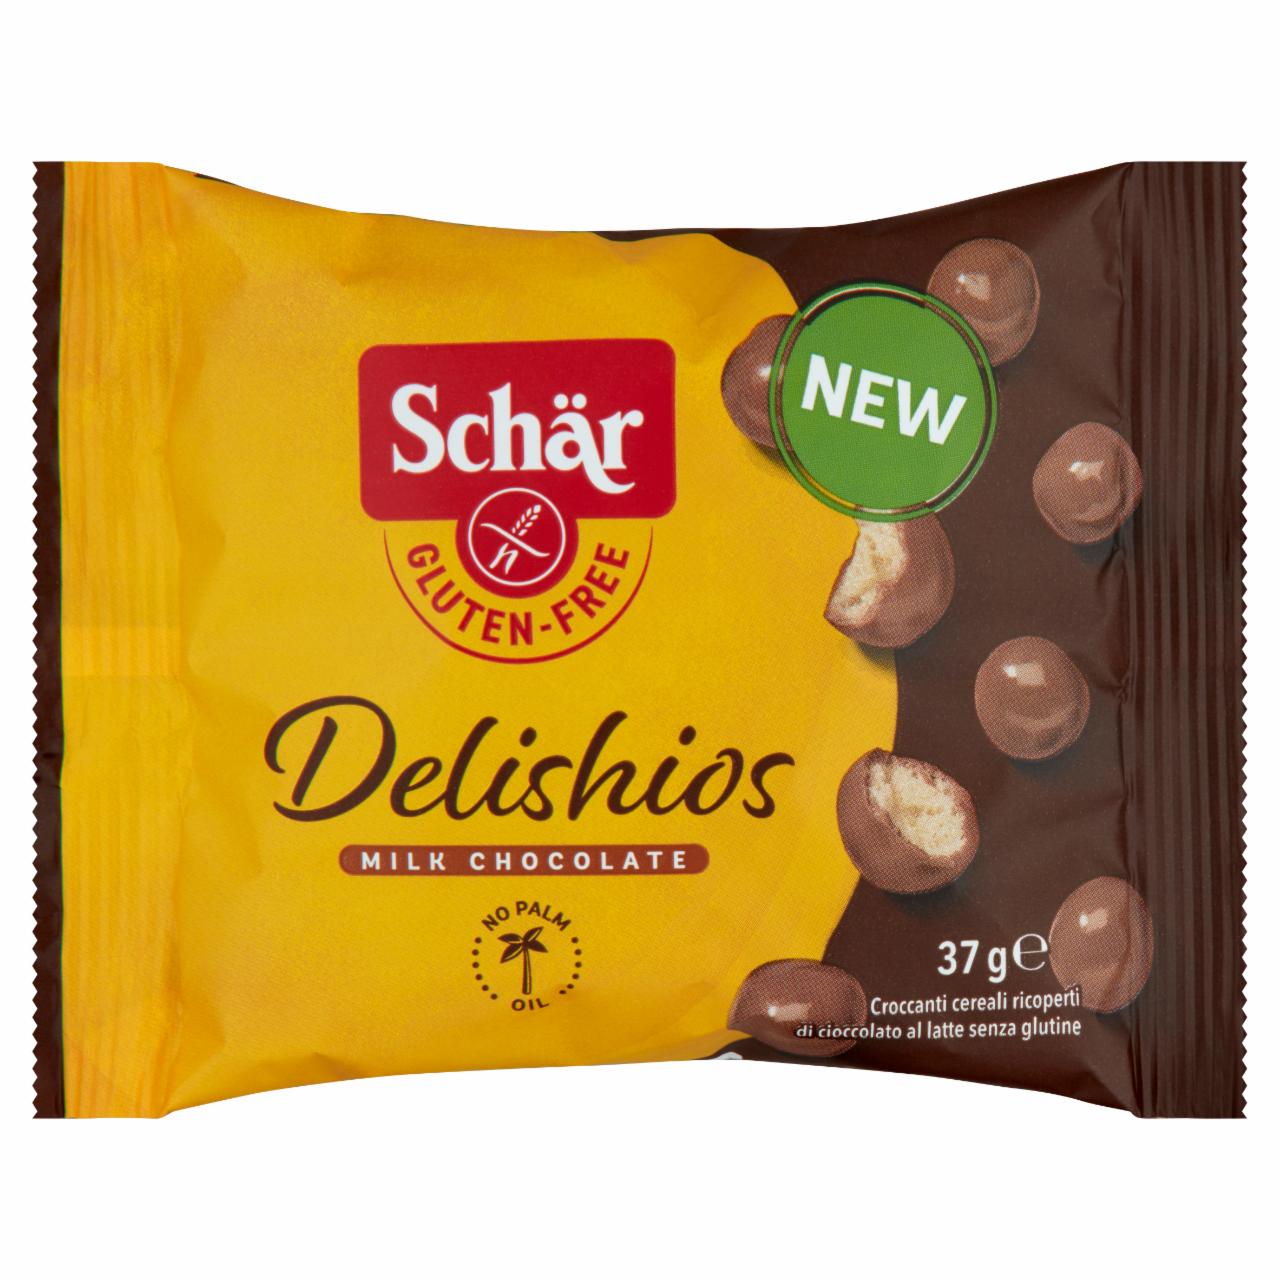 Képek - Schär Delishios gluténmentes gabonagolyók tejcsokoládé bevonattal 37 g